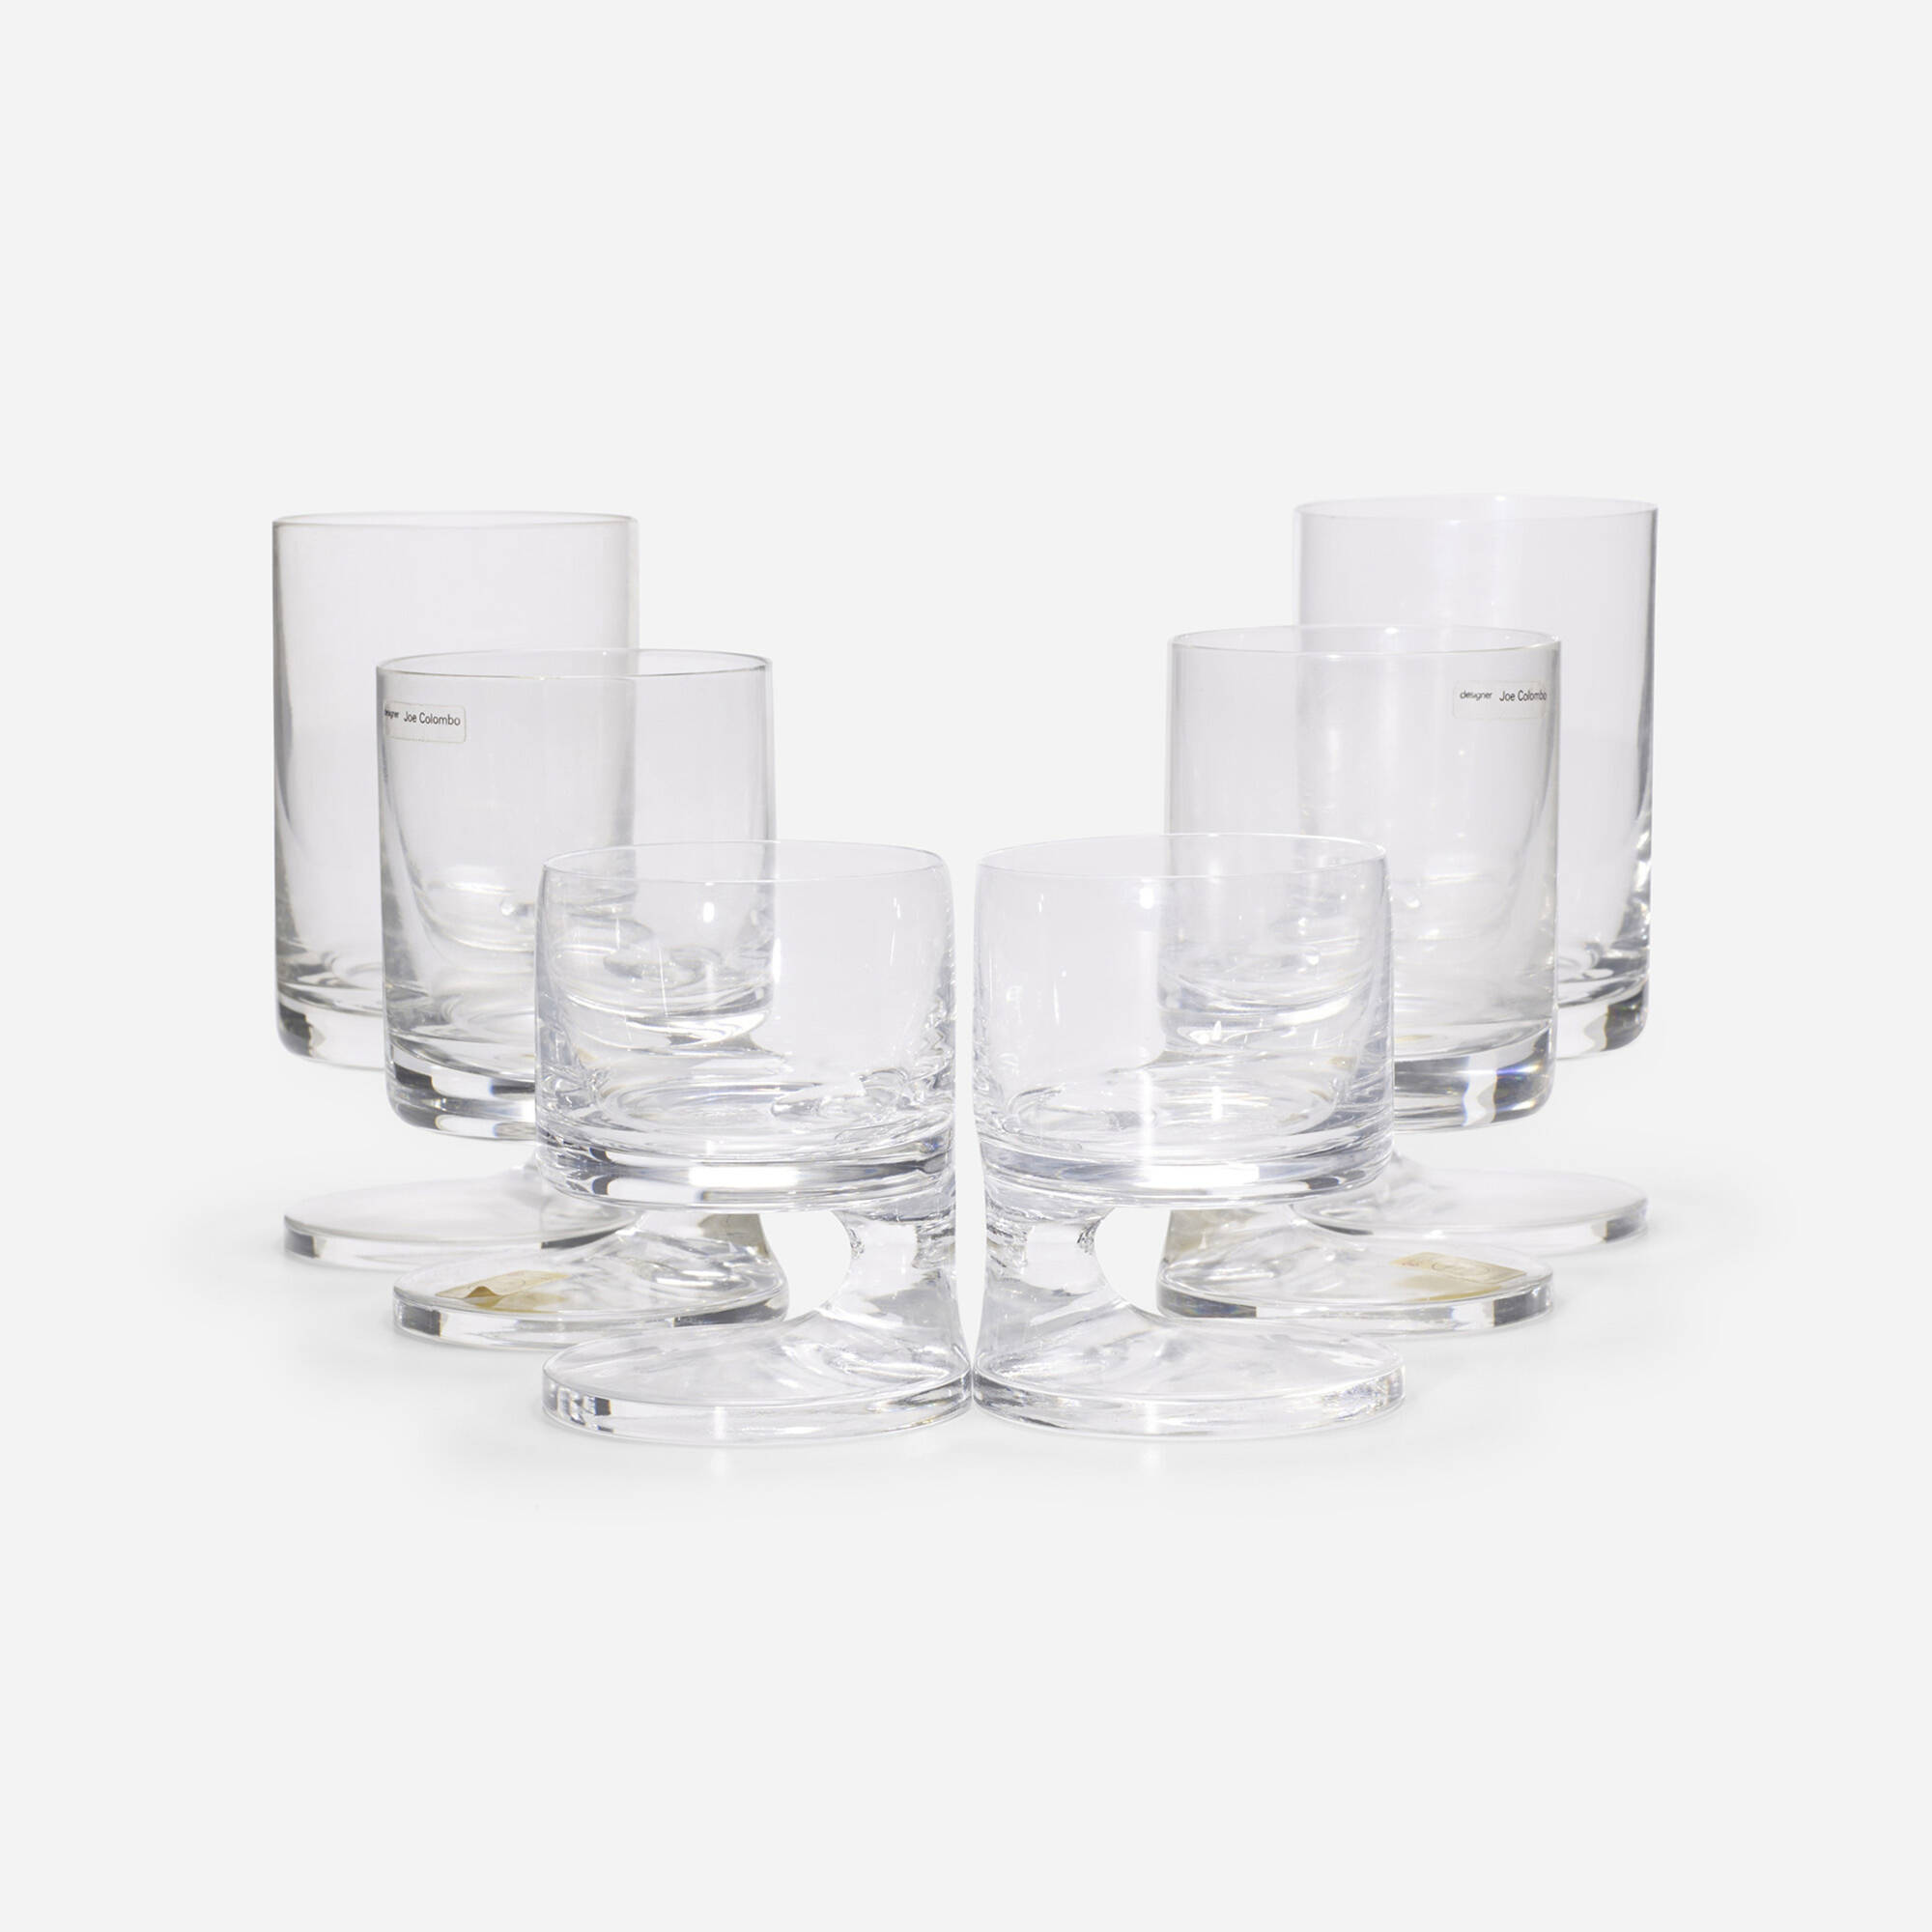 181: JOE COLOMBO, Smoke glasses, set of thirty-three < Mass Modern 